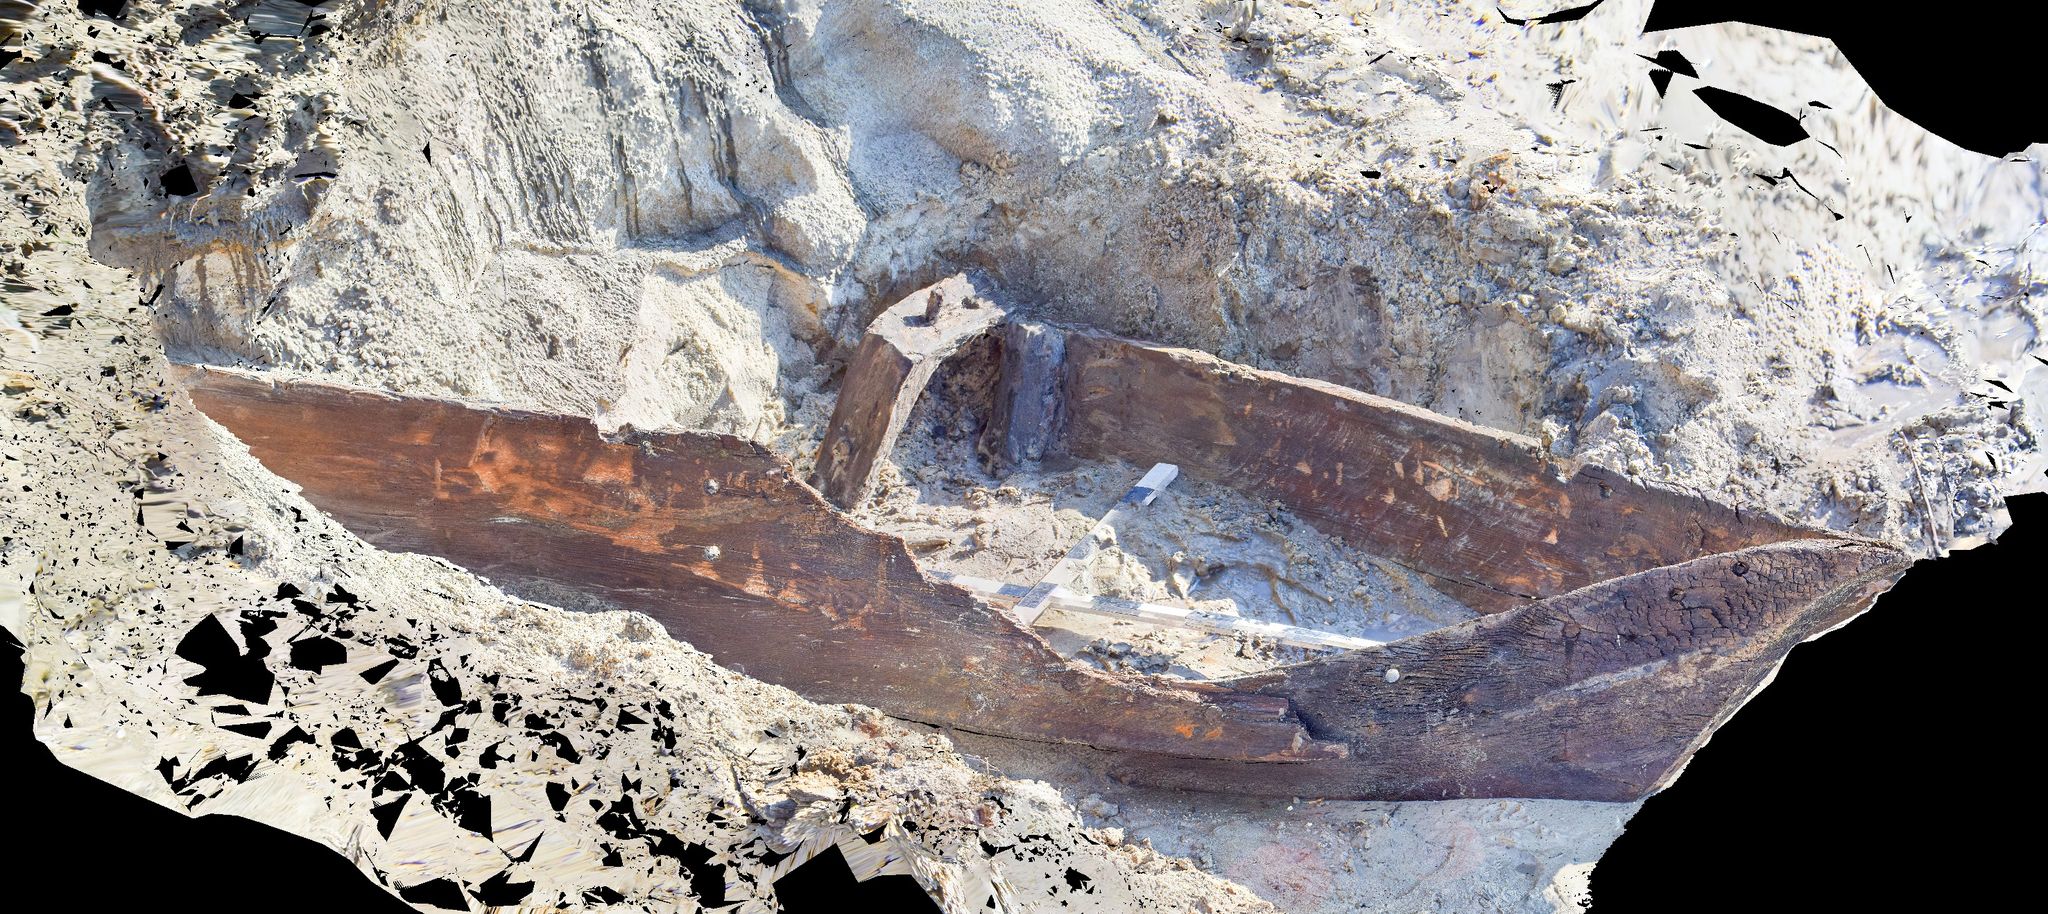 Археологи дослідили дерев’яний човен, знайдений рибалками у Десні неподалік Чернігова